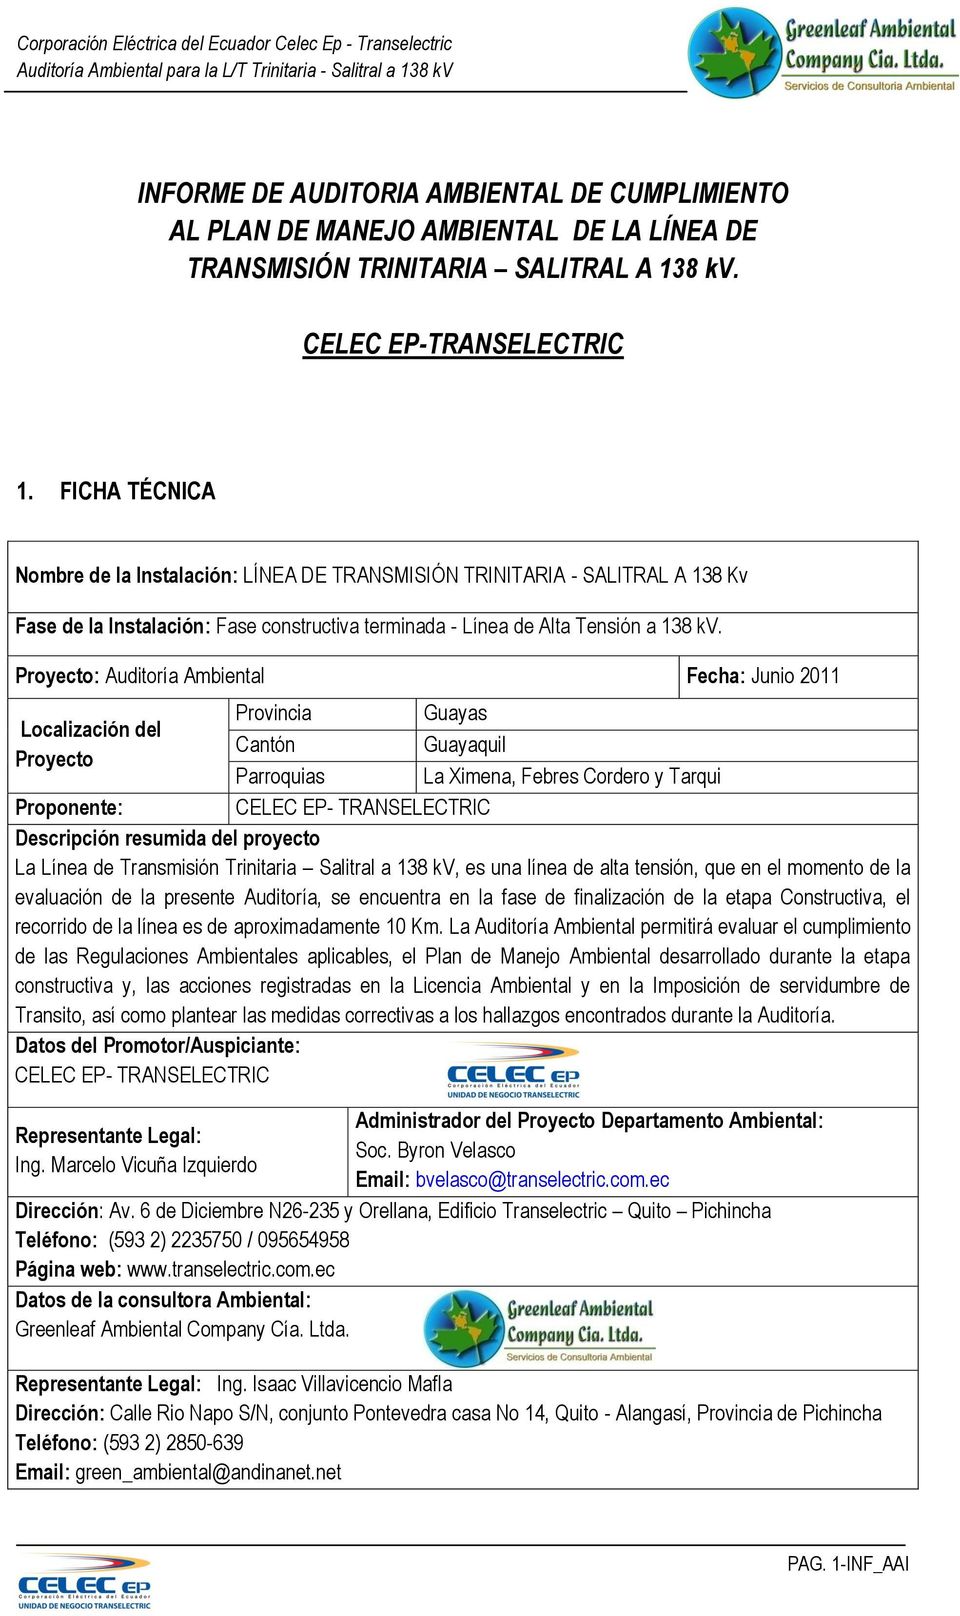 Proyecto: Auditoría Ambiental Fecha: Junio 2011 Provincia Guayas Localización del Cantón Guayaquil Proyecto Parroquias La Ximena, Febres Cordero y Tarqui Proponente: CELEC EP- TRANSELECTRIC